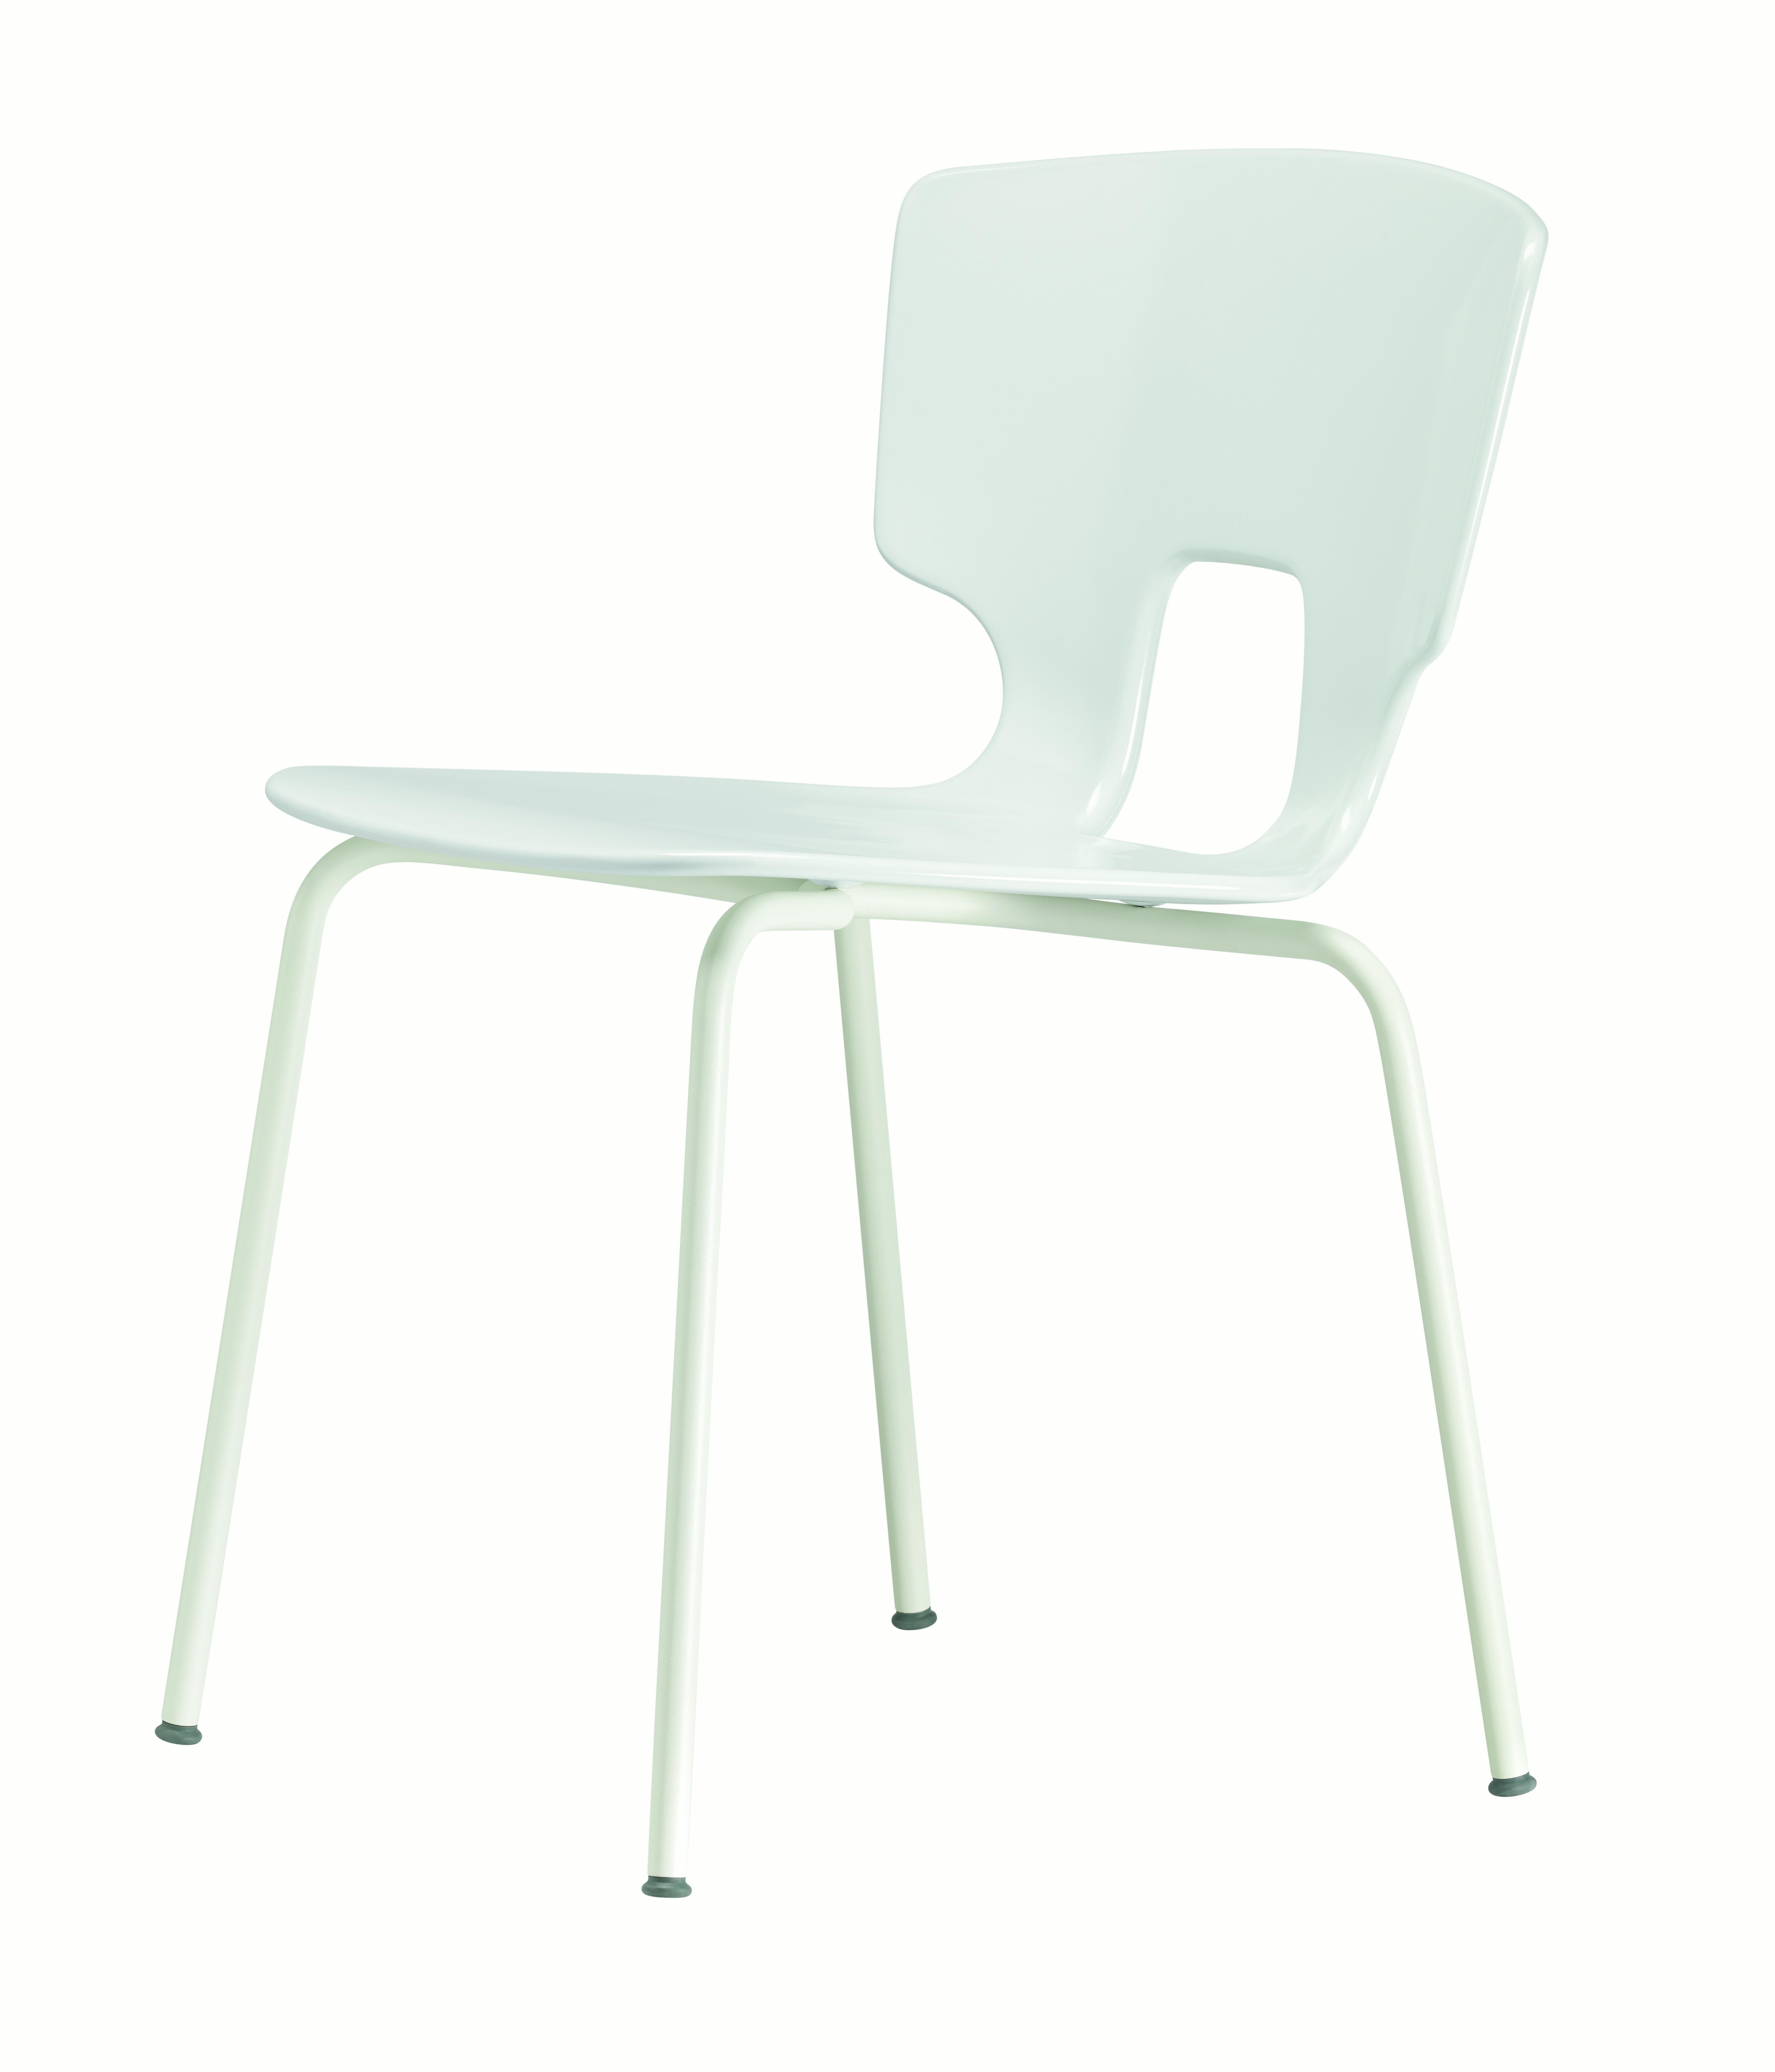 Alias 50A Erice Stuhl mit weiß lackiertem Stahlgestell von Alfredo Häberli

Stapelbarer Stuhl mit Gestell aus lackiertem oder verchromtem Stahl; Sitz und Rückenlehne aus massivem Kunststoff.

Er wurde 1945 in Lenno Tremezzina (Como) geboren und